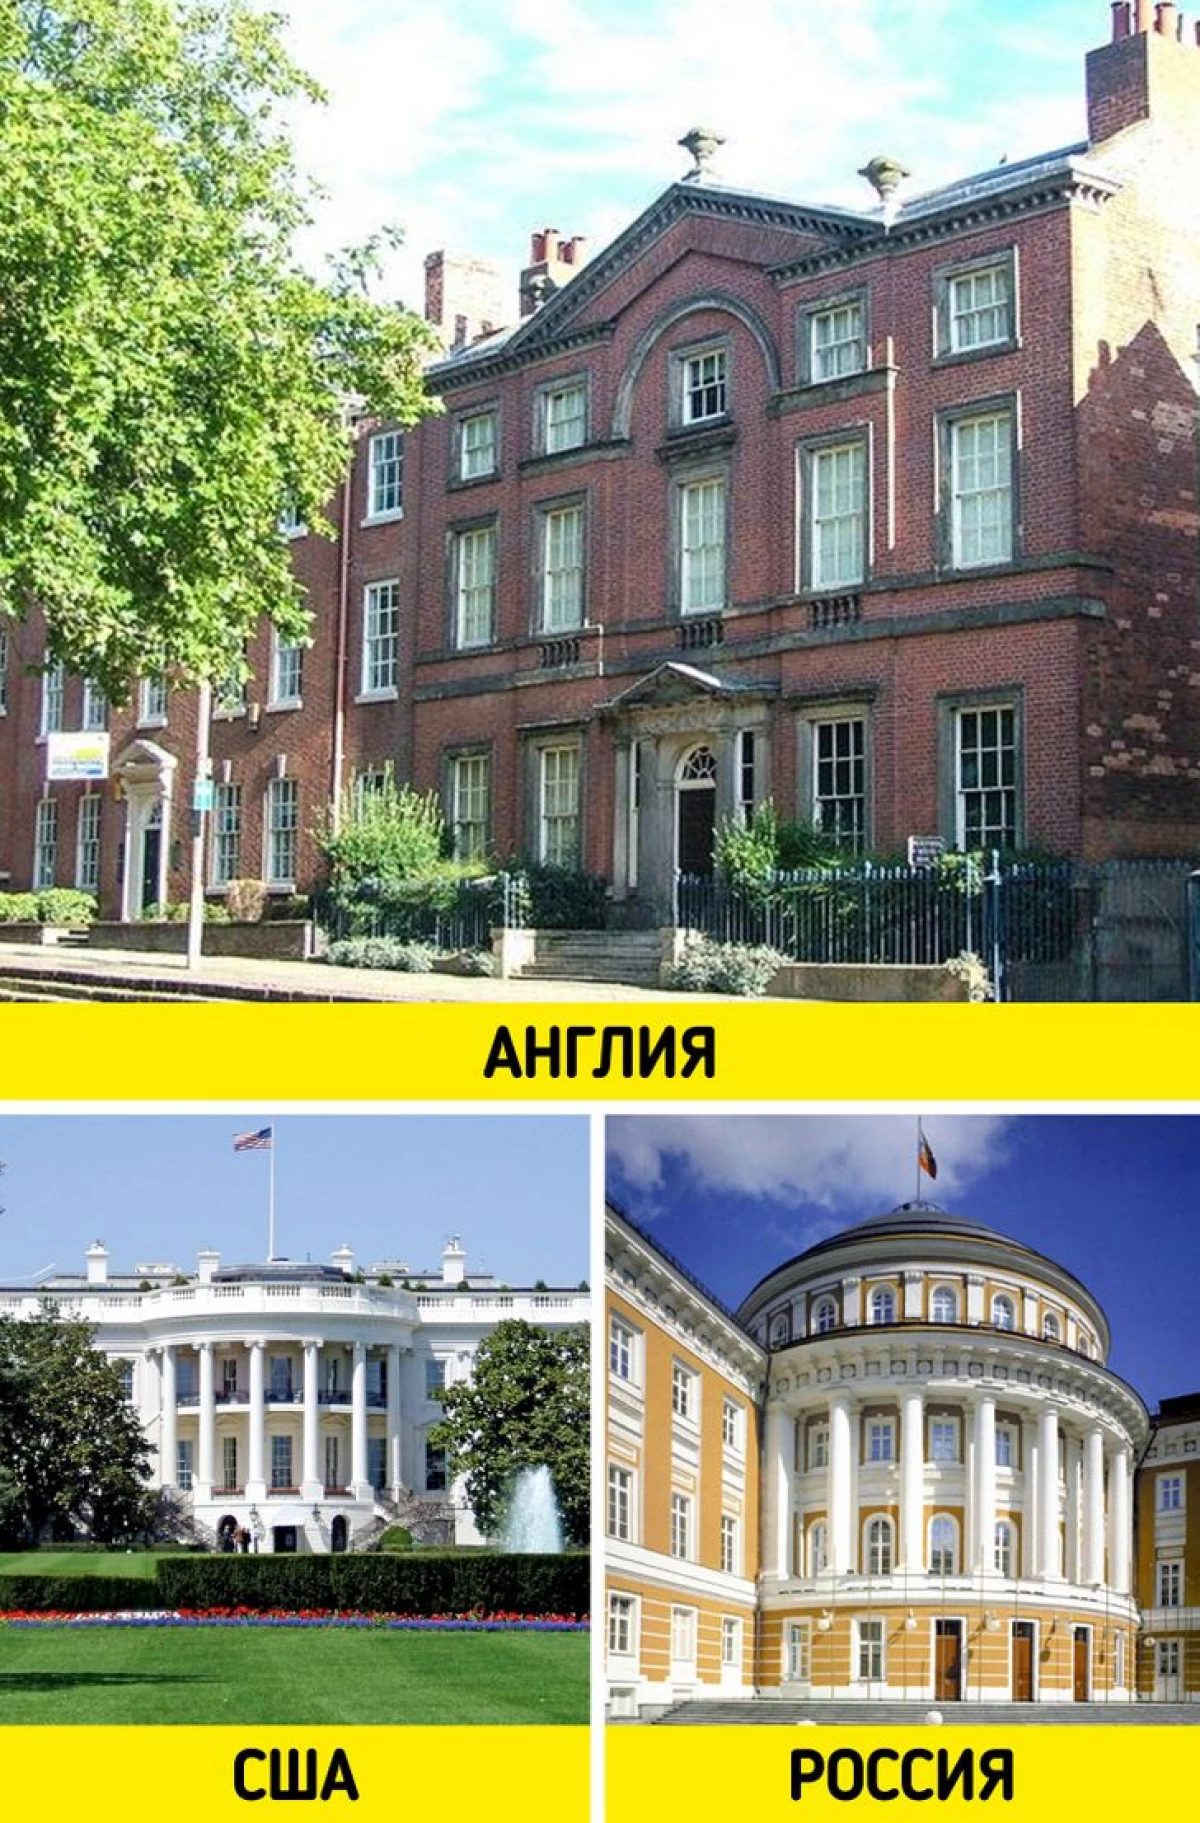 6 الأساليب المعمارية التقليدية التي في بلدان مختلفة تبدو مختلفة تماما 1748_10